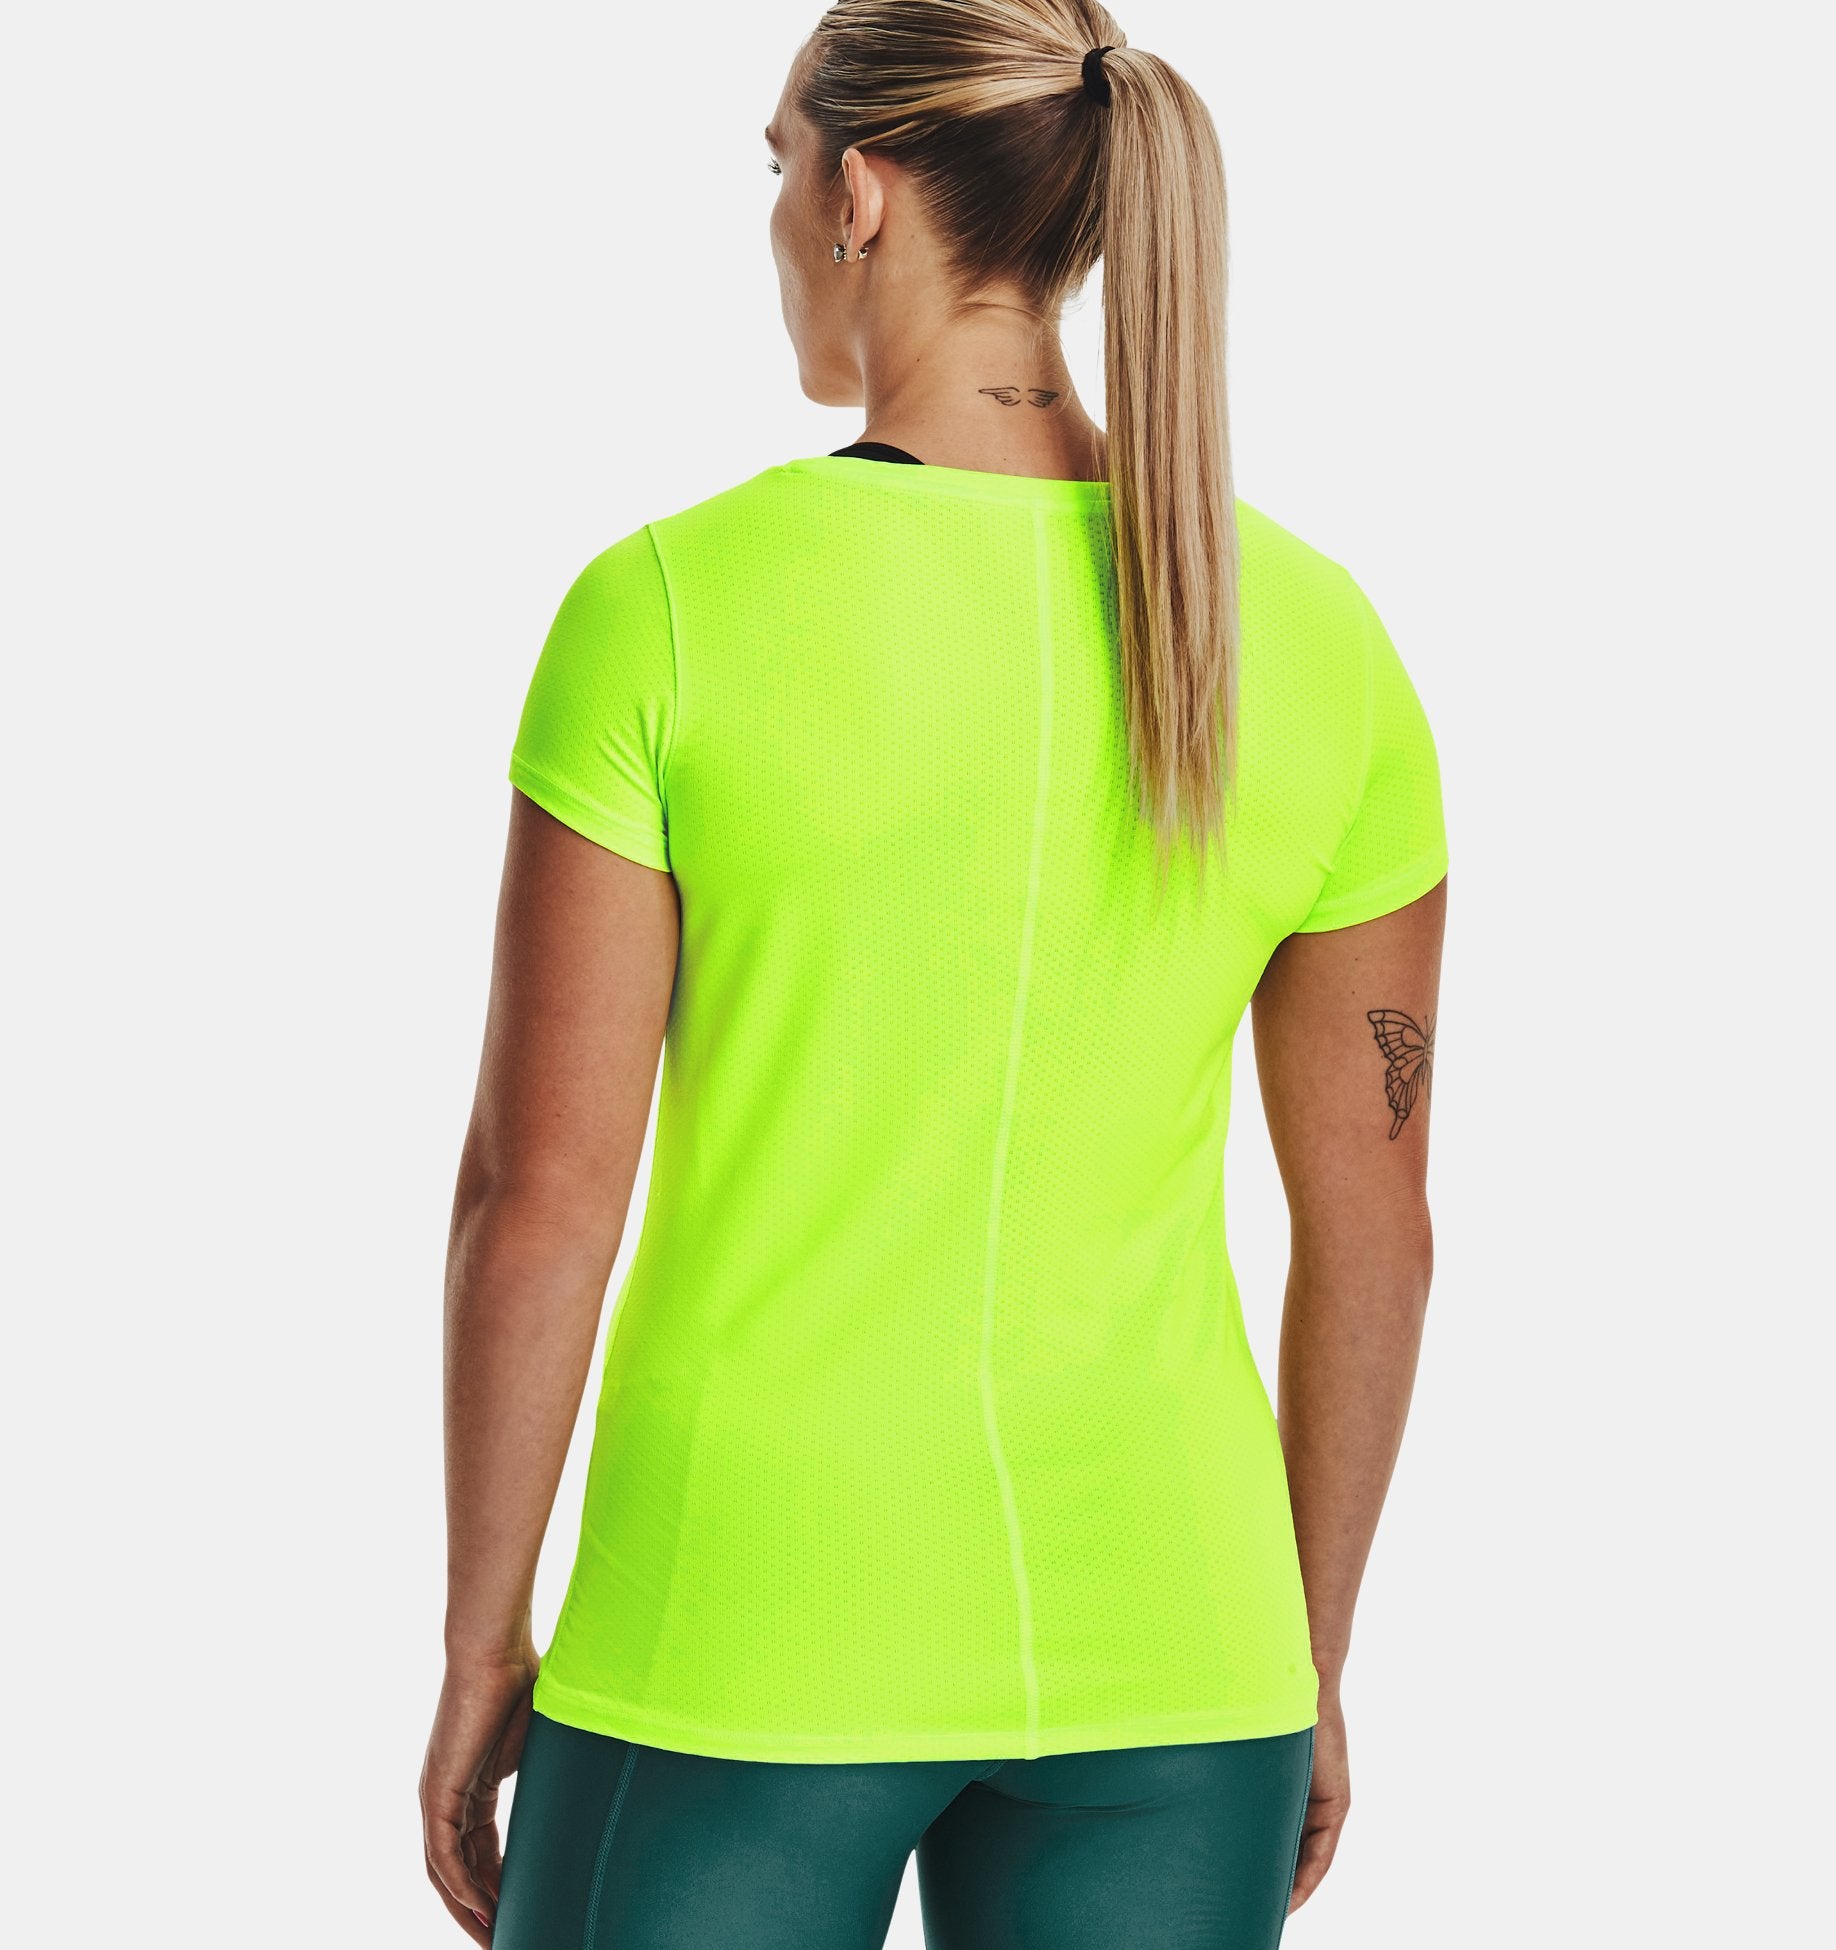 t-shirt-sport-femme-heatgear-lime-UNDER-ARMOUR-MAHEU-GO-SPORT-02